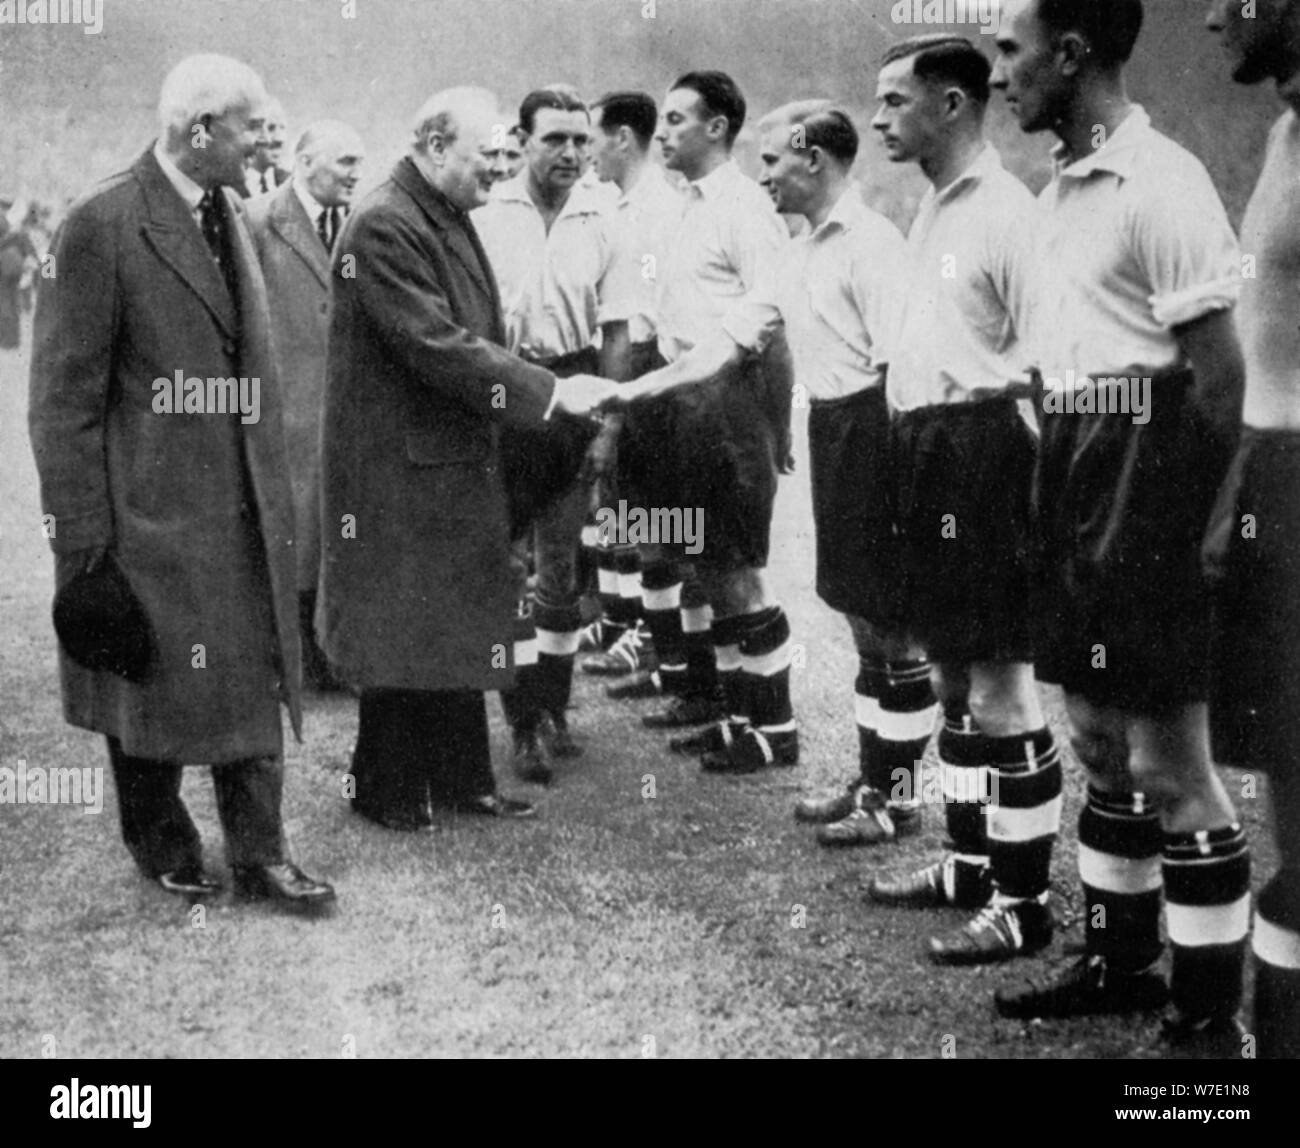 Winston Churchill saluda el equipo de fútbol de Inglaterra, de Wembley, Londres, octubre de 1941.Artista: London News Agency Foto de stock